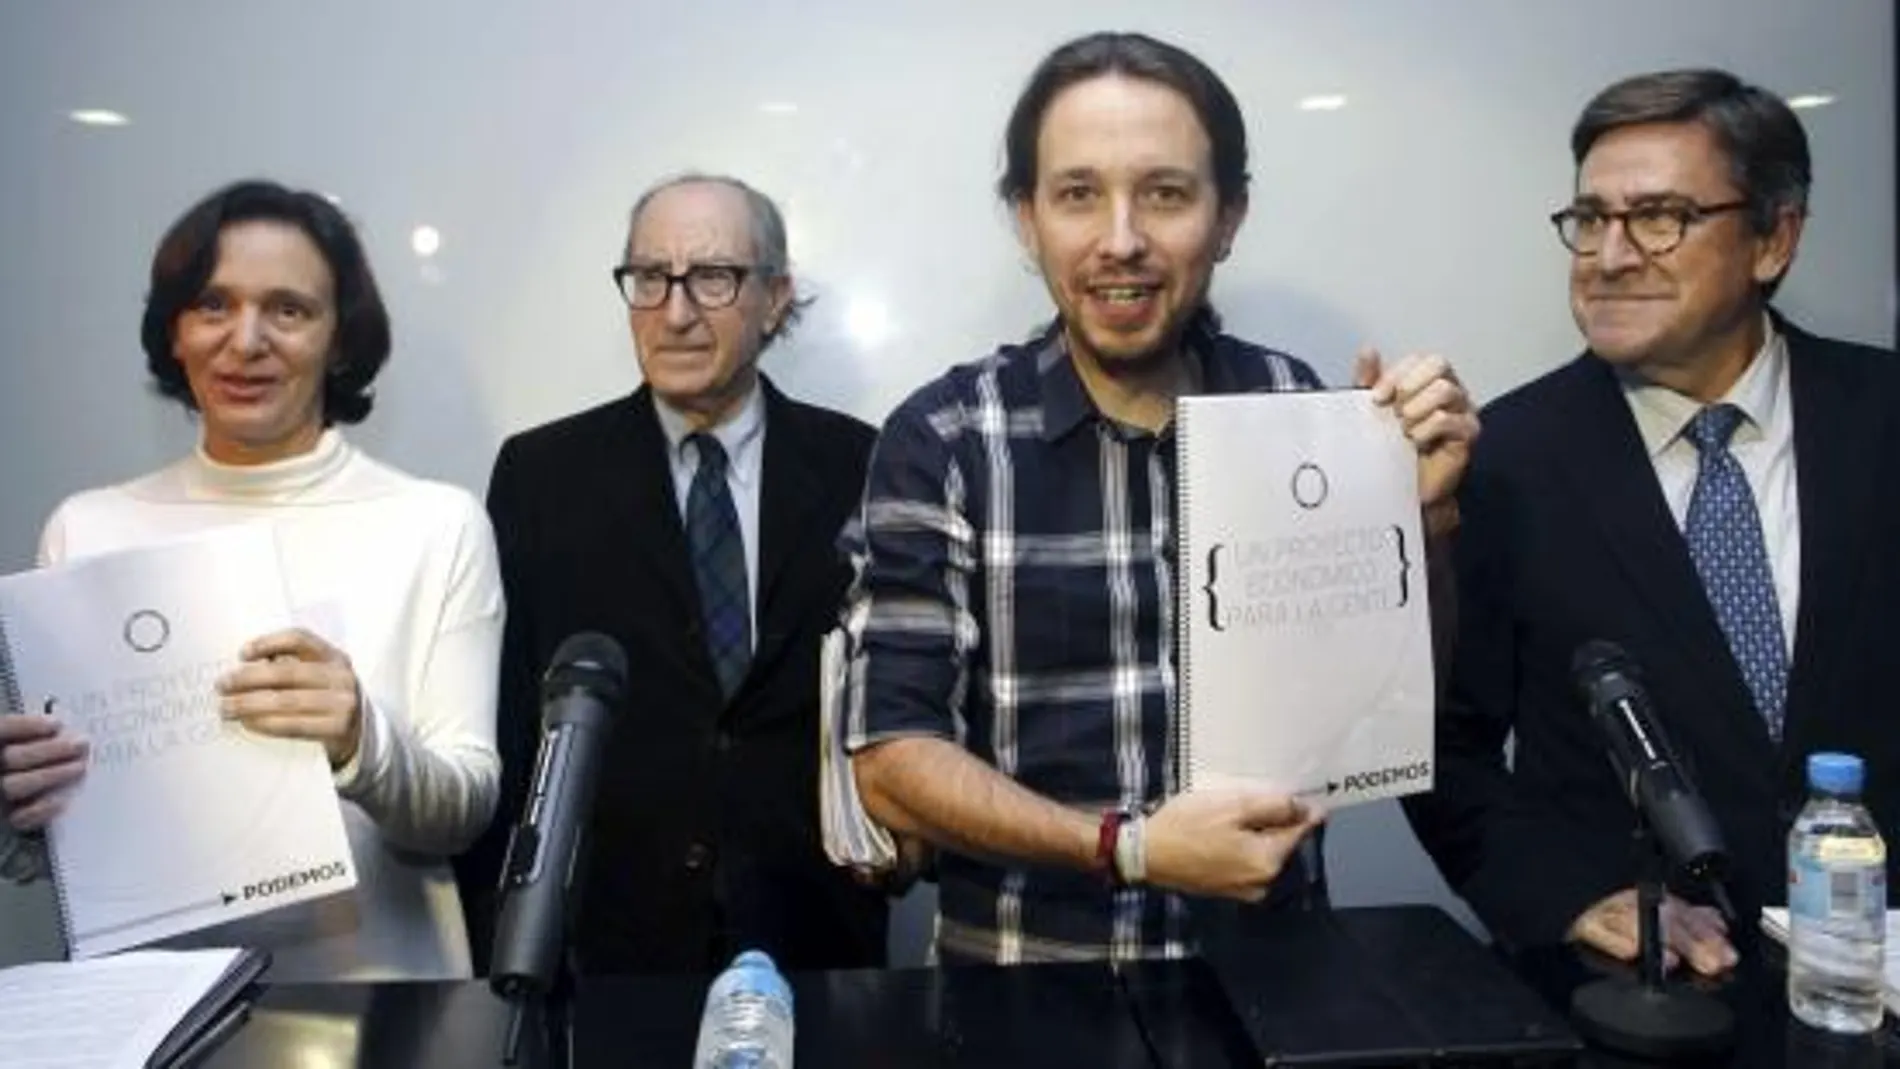 La fundadora de Podemos Carolina Bescansa junto a Pablo Iglesias